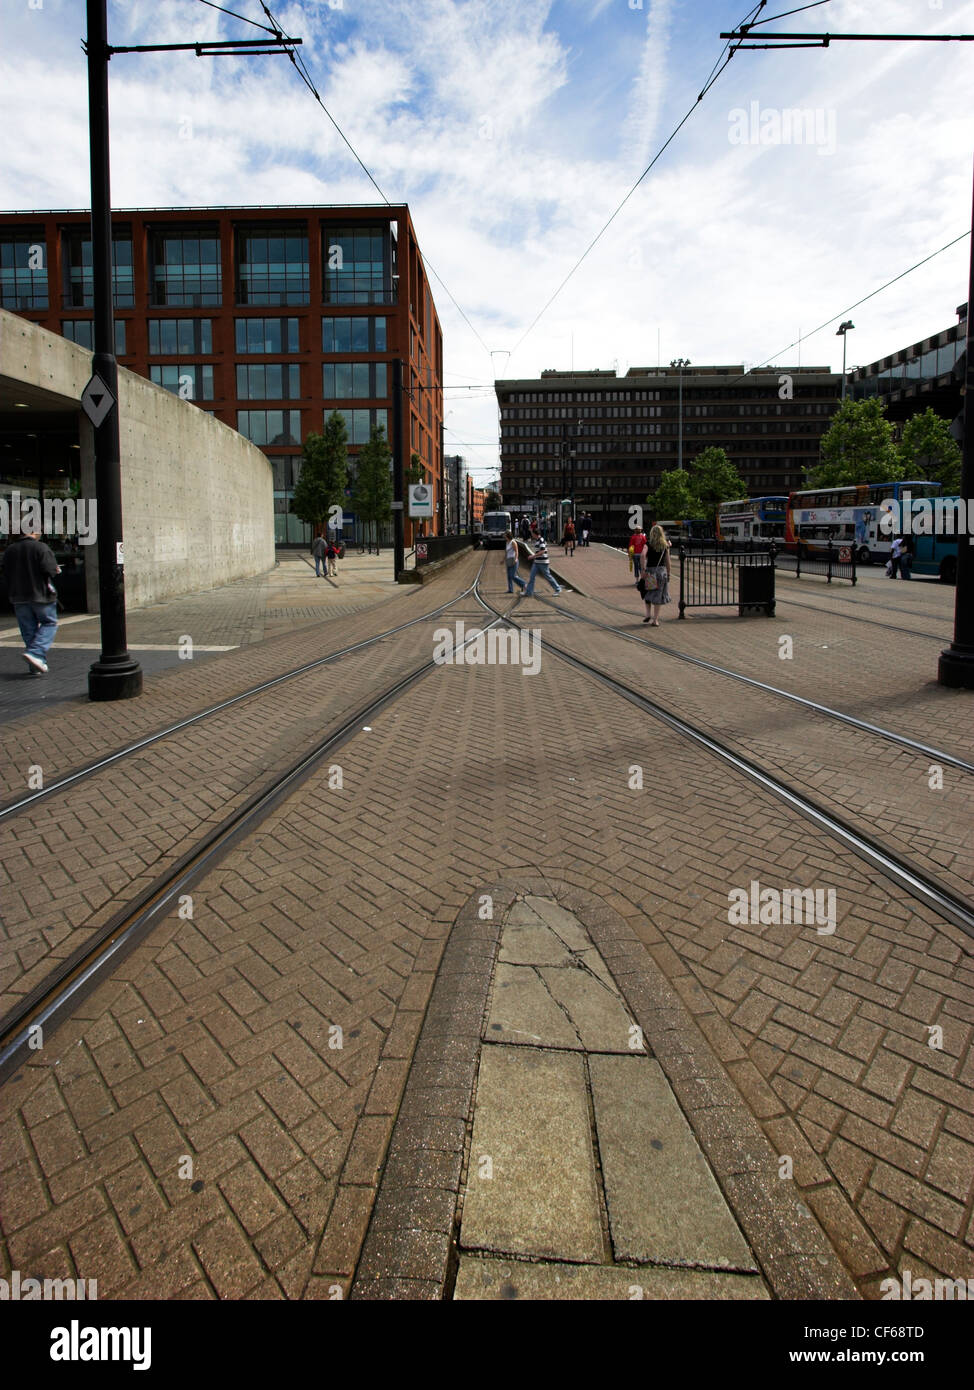 Les lignes de tramway dans le centre-ville de Manchester. Manchester Metrolink est révolutionnaire du nouveau système de transport, qui est devenu le modèle f Banque D'Images